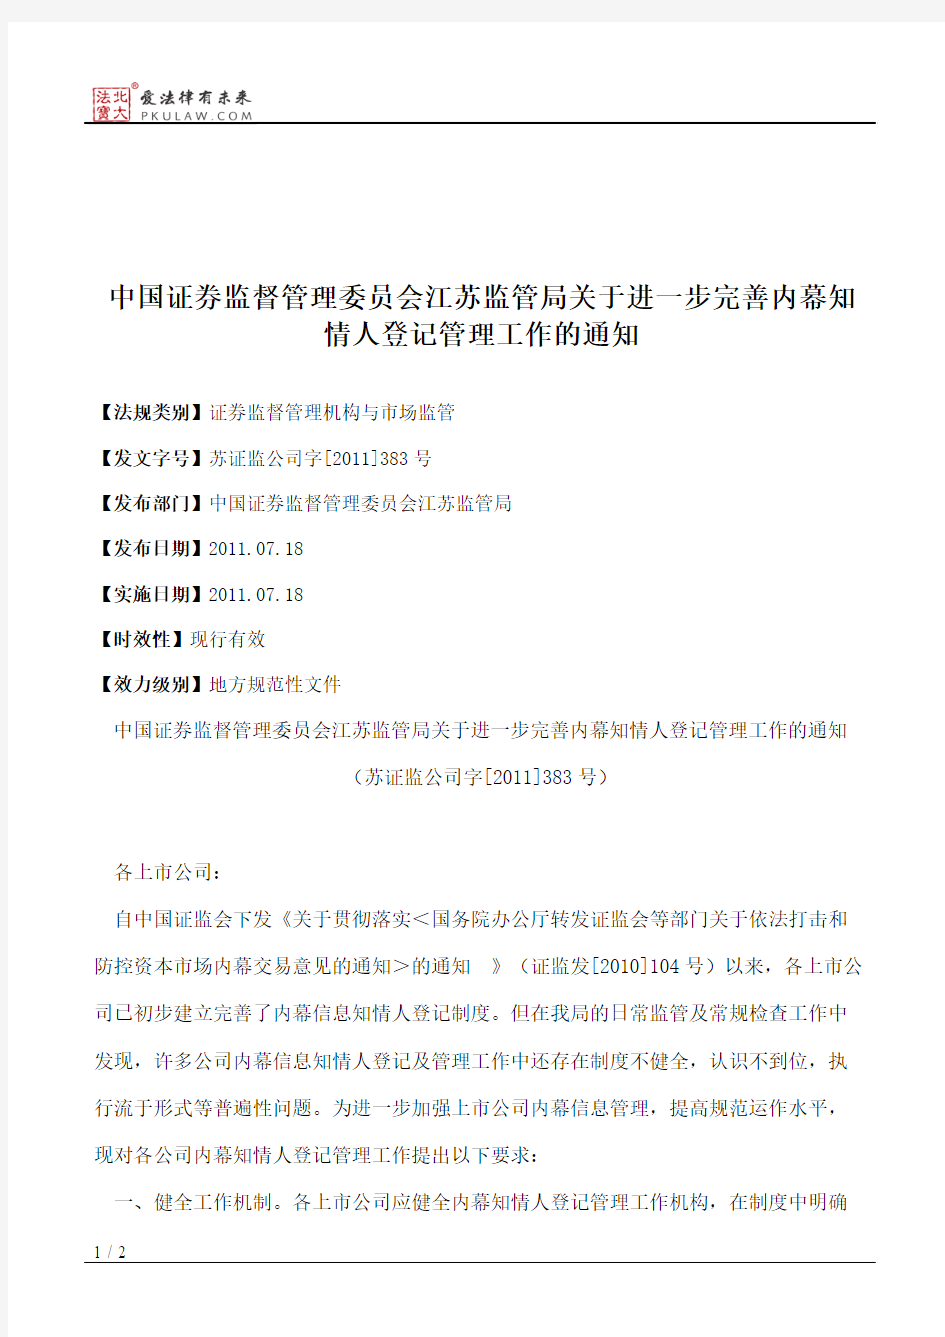 中国证券监督管理委员会江苏监管局关于进一步完善内幕知情人登记